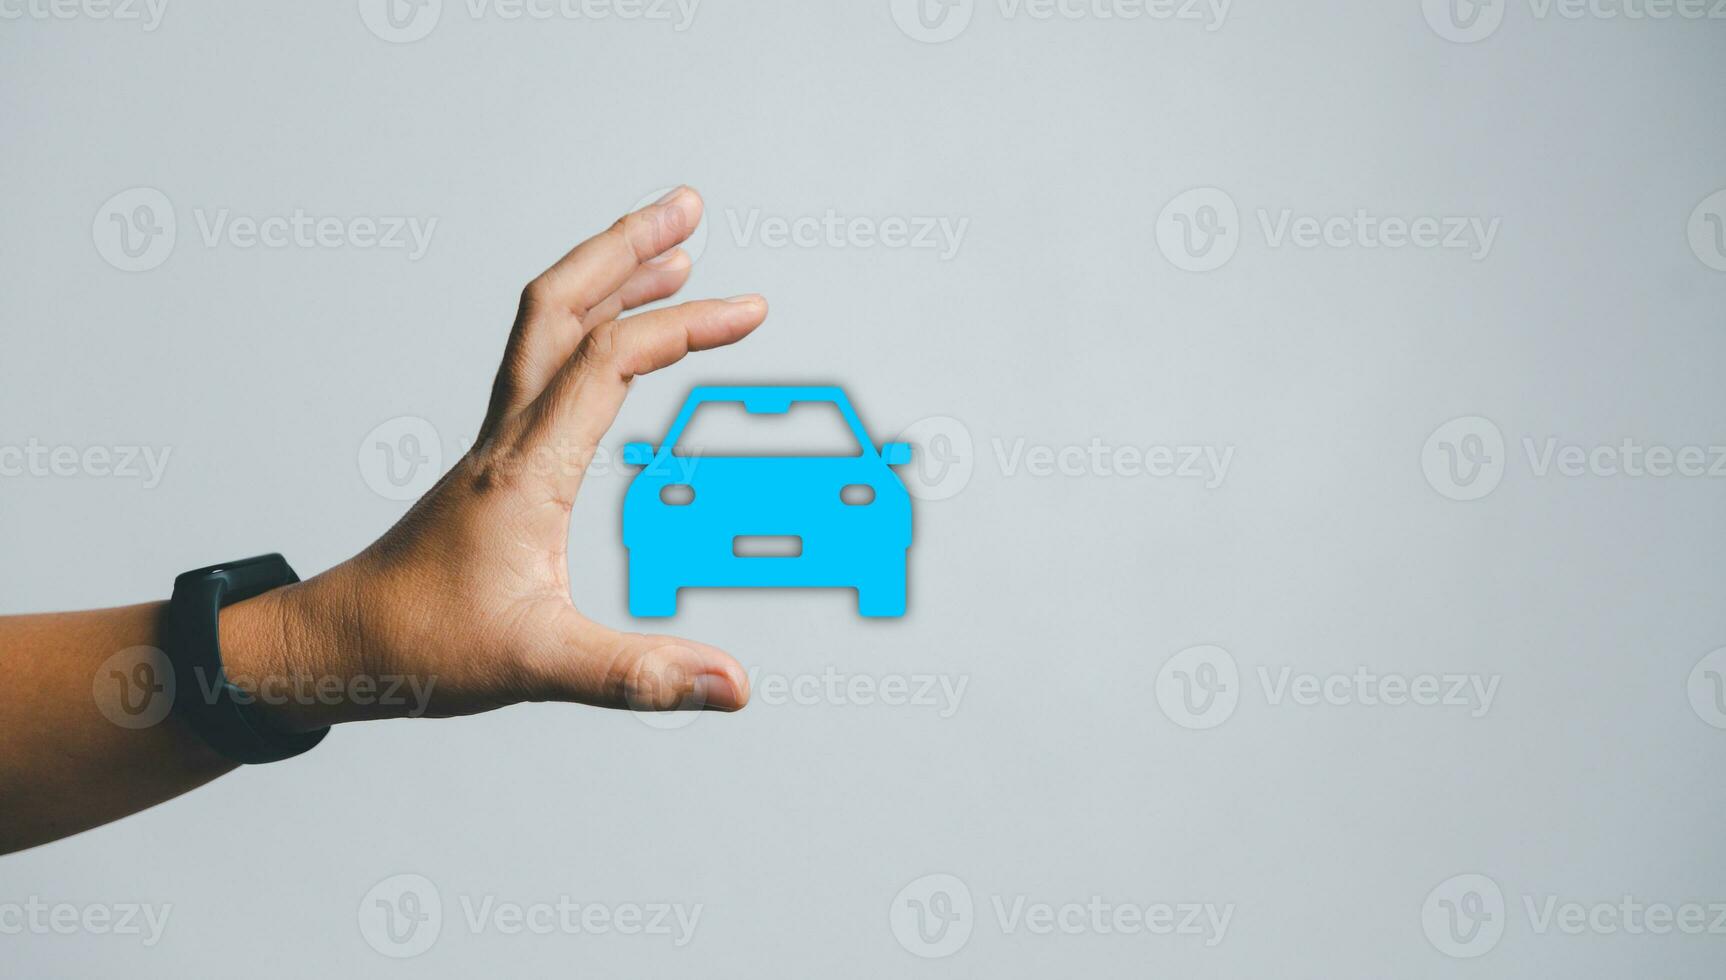 företag kvinnas hand skyddande blå ikon bil på skrivbord. planera till klara av transport finansiera kostar. begrepp av bil försäkring företag, sparande köpa - försäljning med beskatta och lån för ny bil. foto